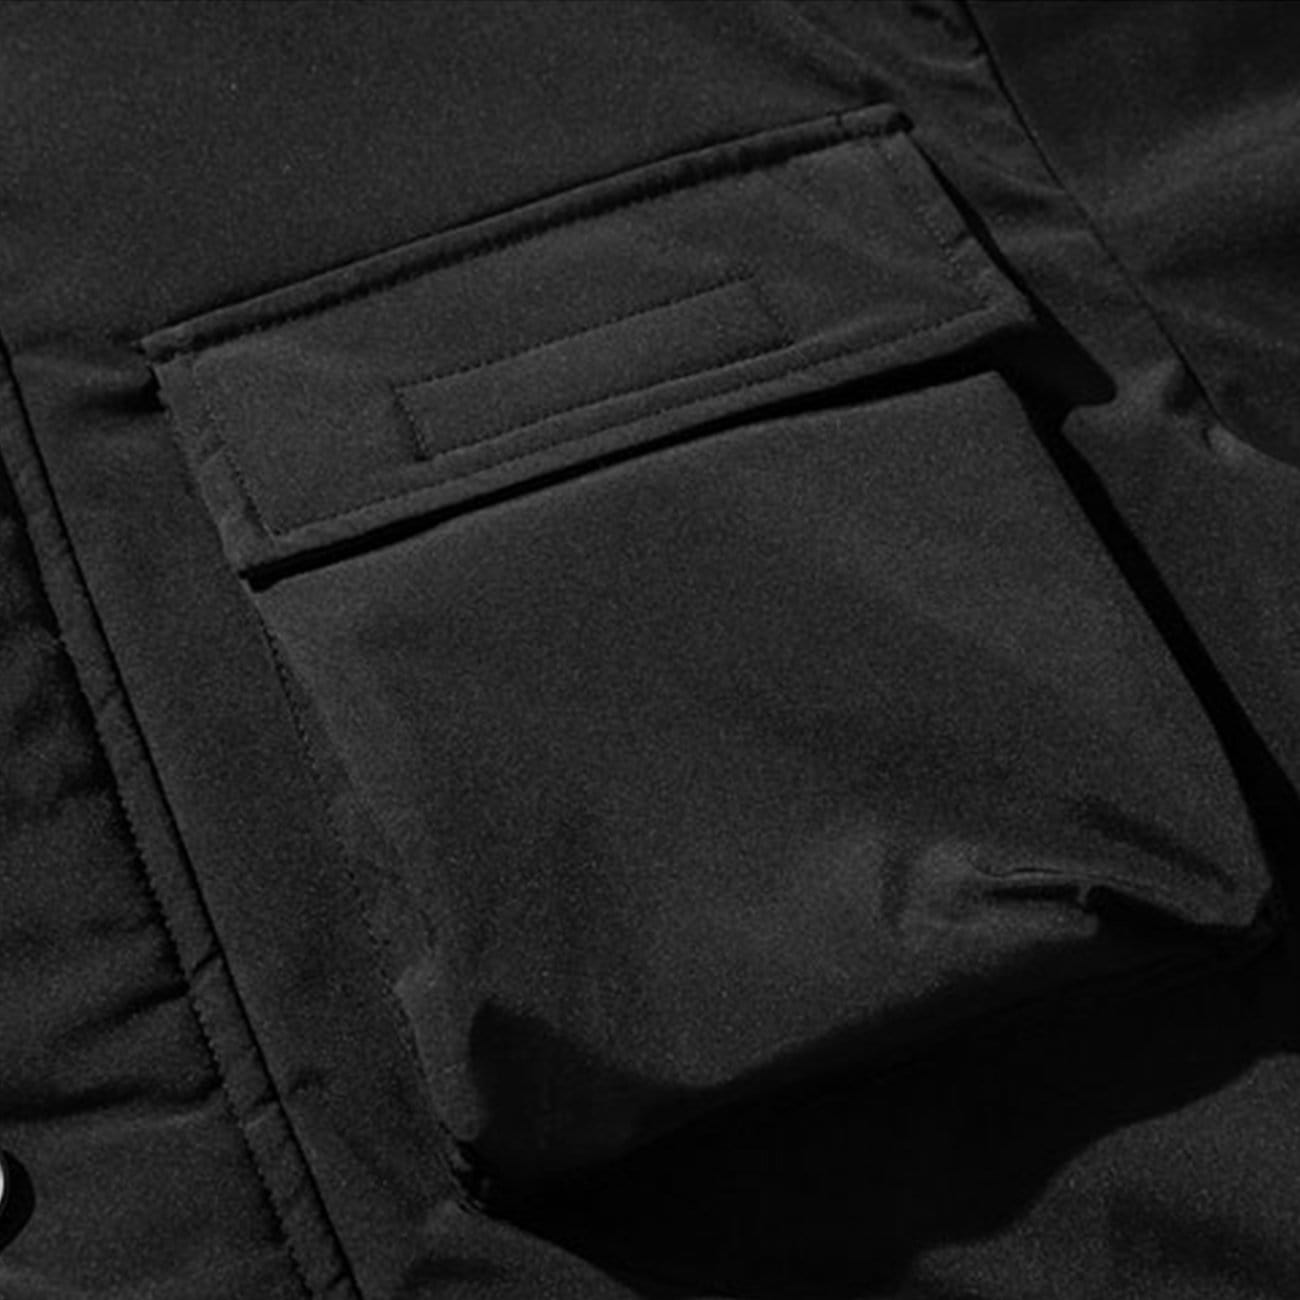 Multi Pockets Hooded Winter Down Coat Streetwear Brand Techwear Combat Tactical YUGEN THEORY